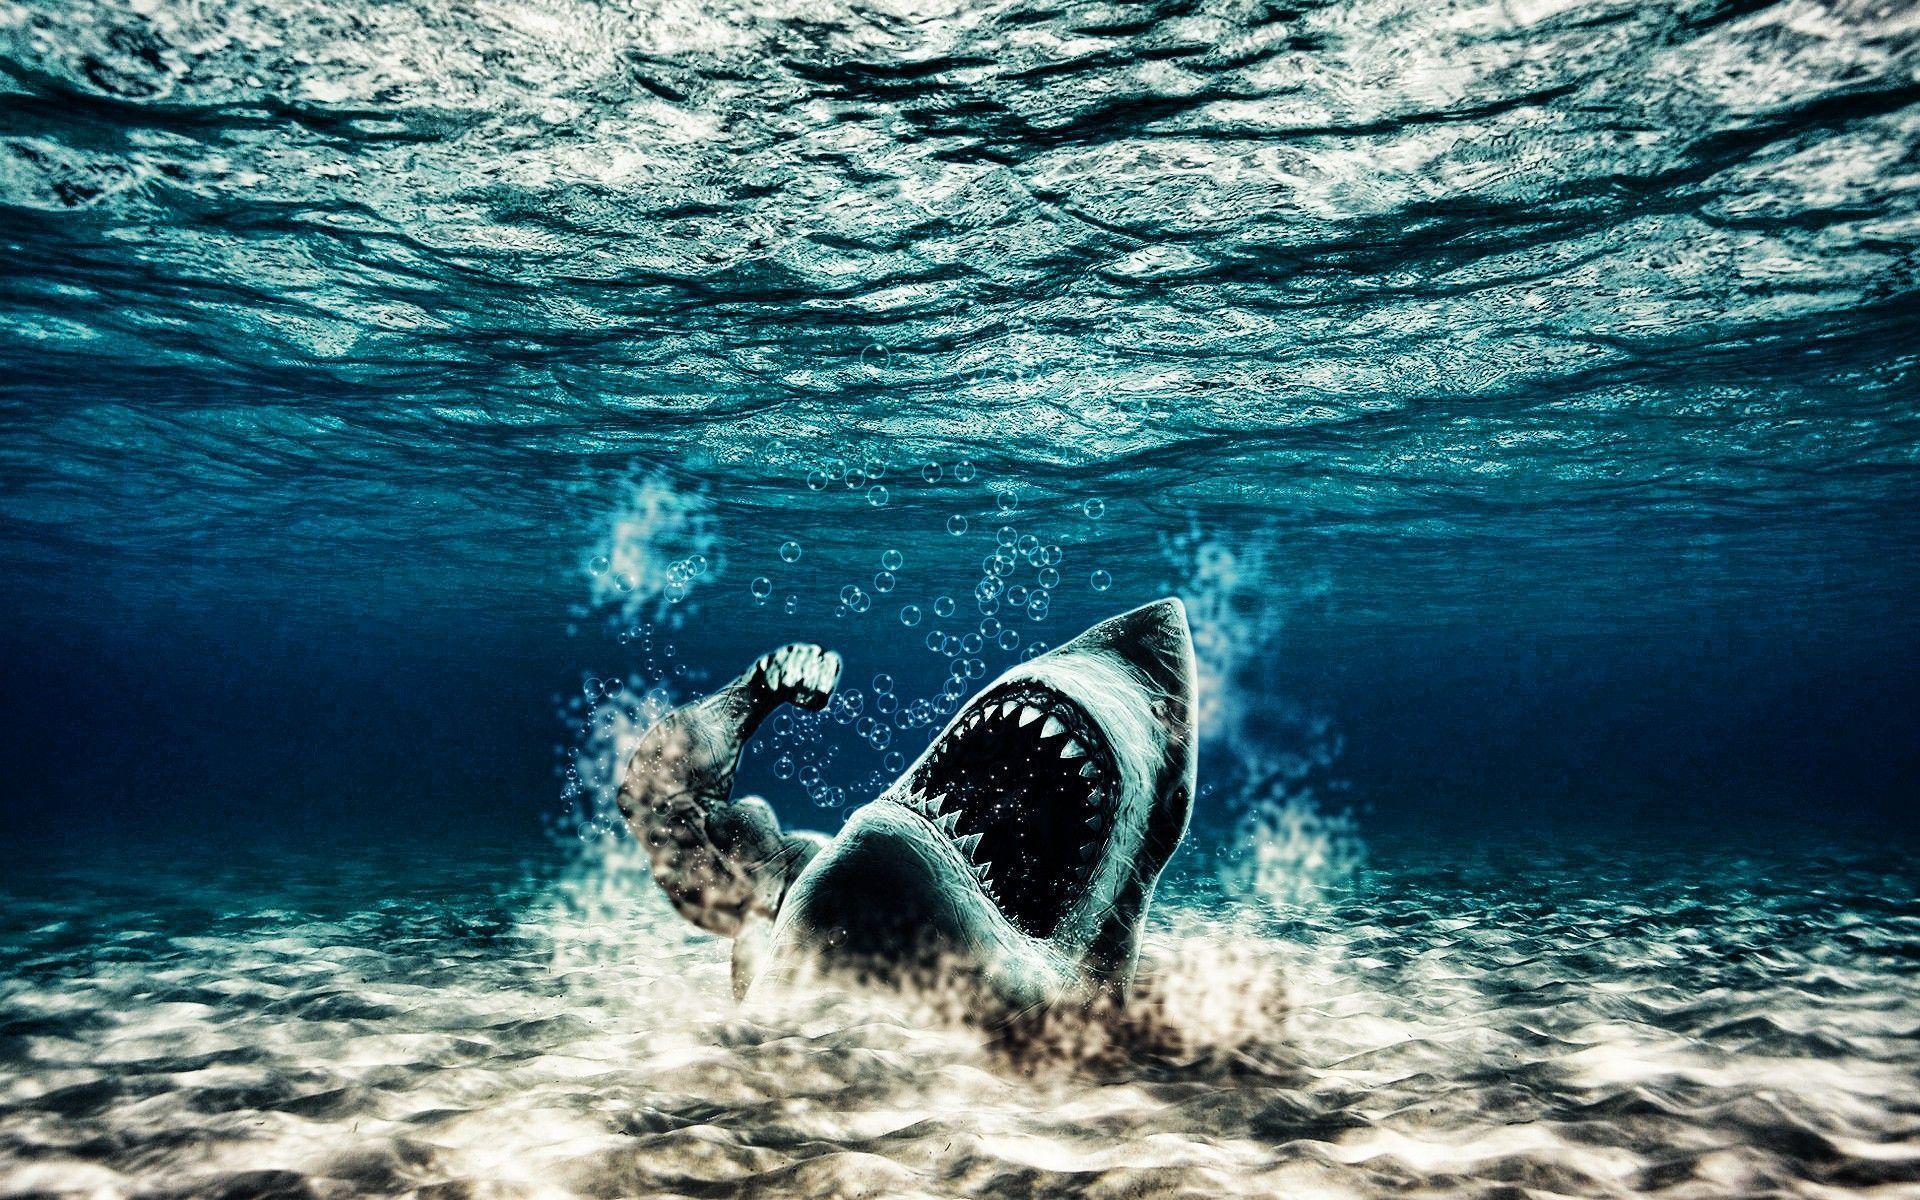 Underwater Wallpaper iPhone Mobiles Shark Wallpaper. Cool